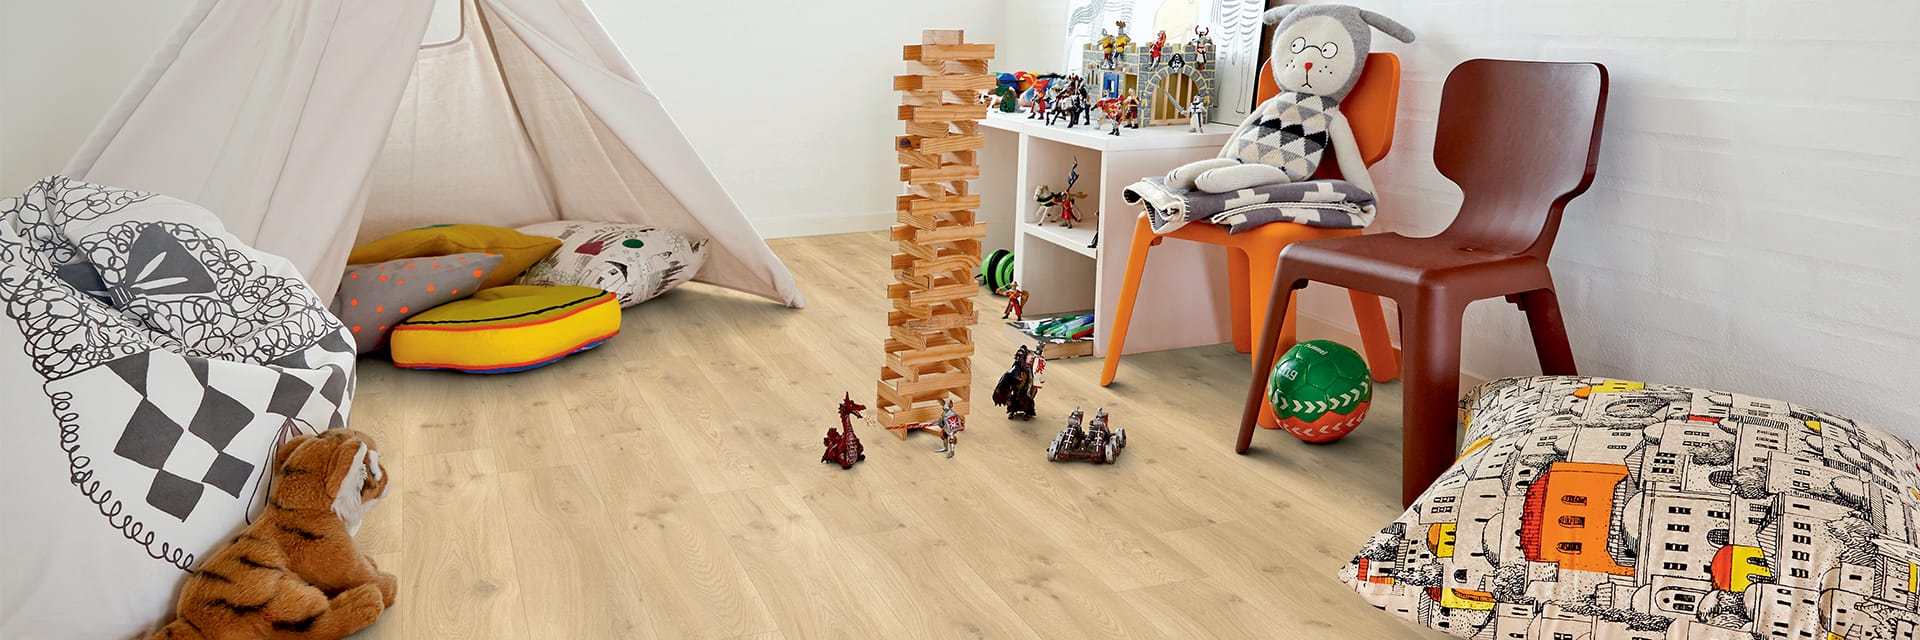 Camera dei bambini con giocattoli posati su un pavimento vinilico beige